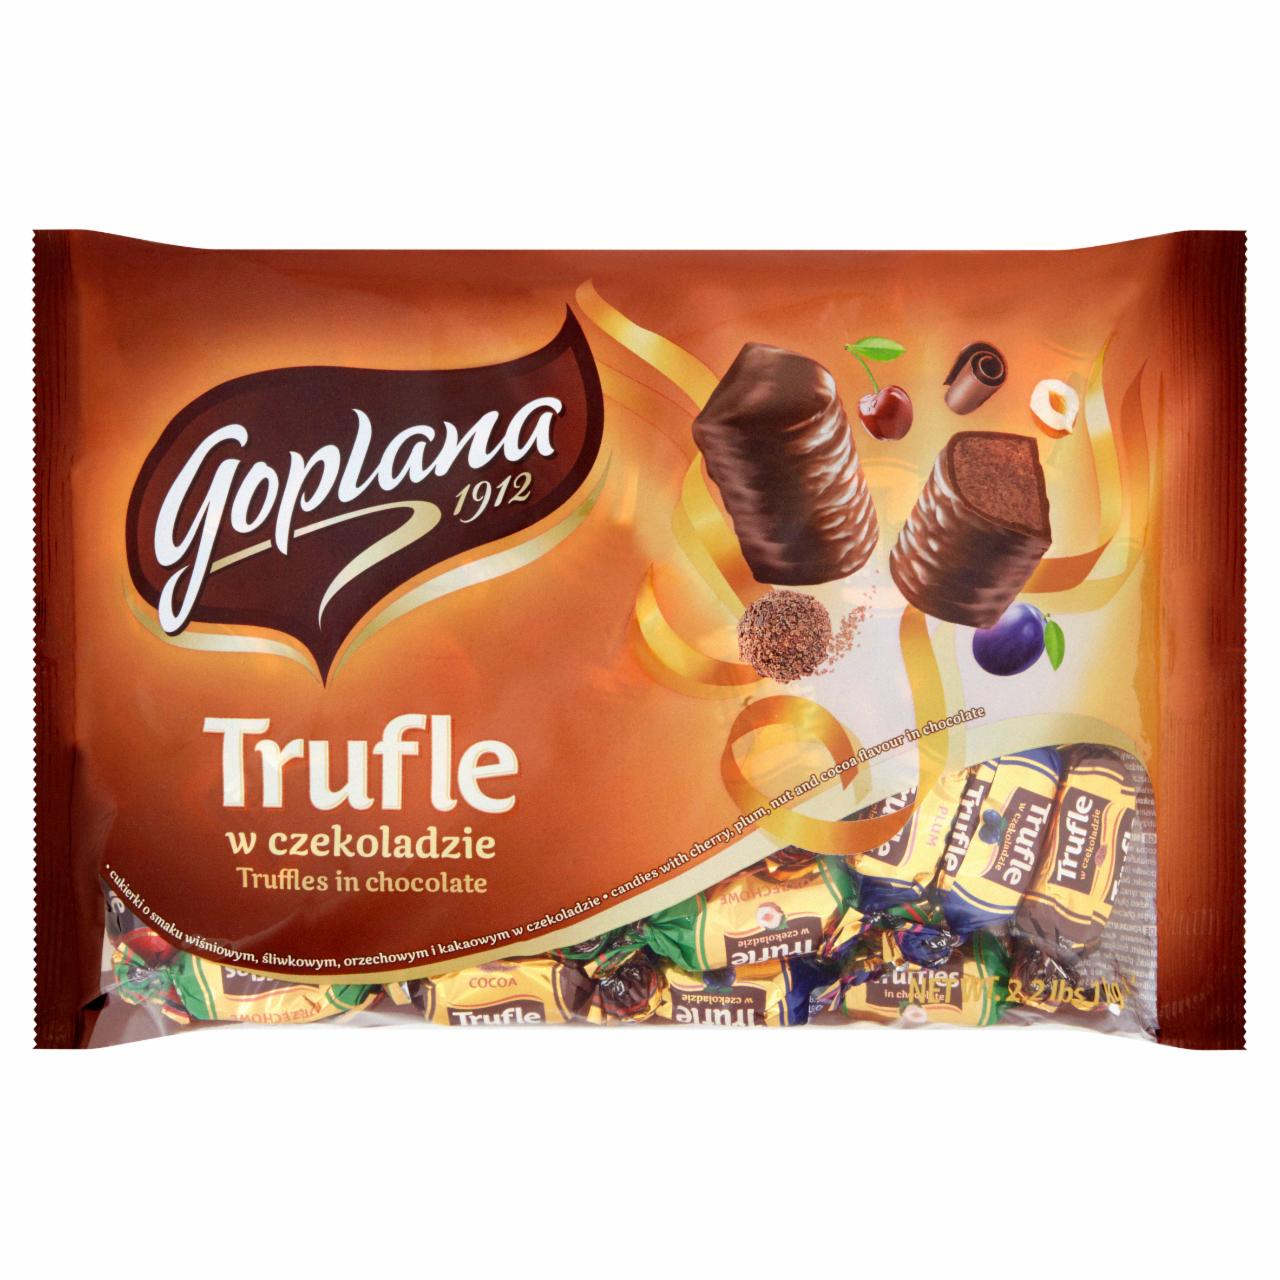 Zdjęcia - Goplana Trufle w czekoladzie Mieszanka pomadek 1 kg